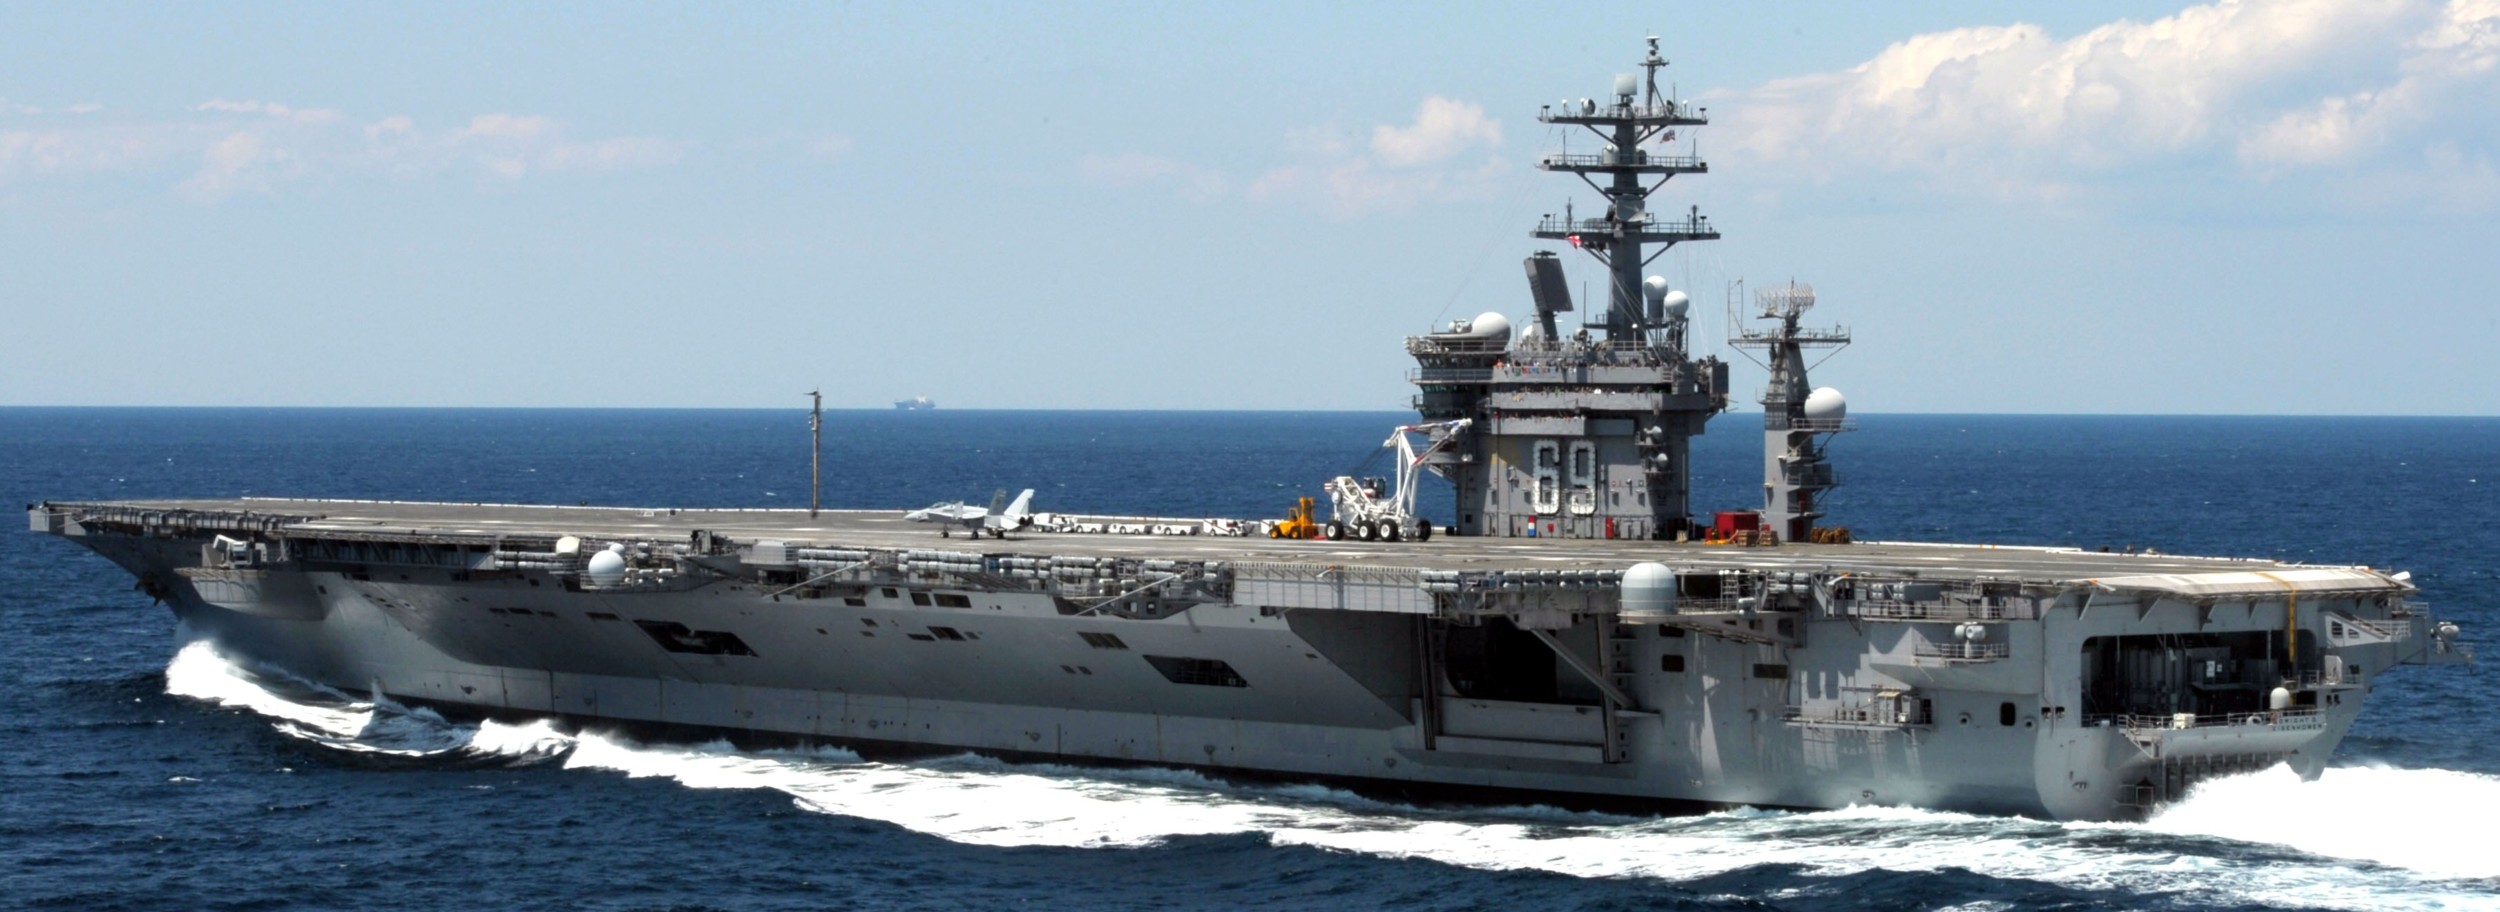 uss dwight d. eisenhower cvn-69 aircraft carrier 2011 146